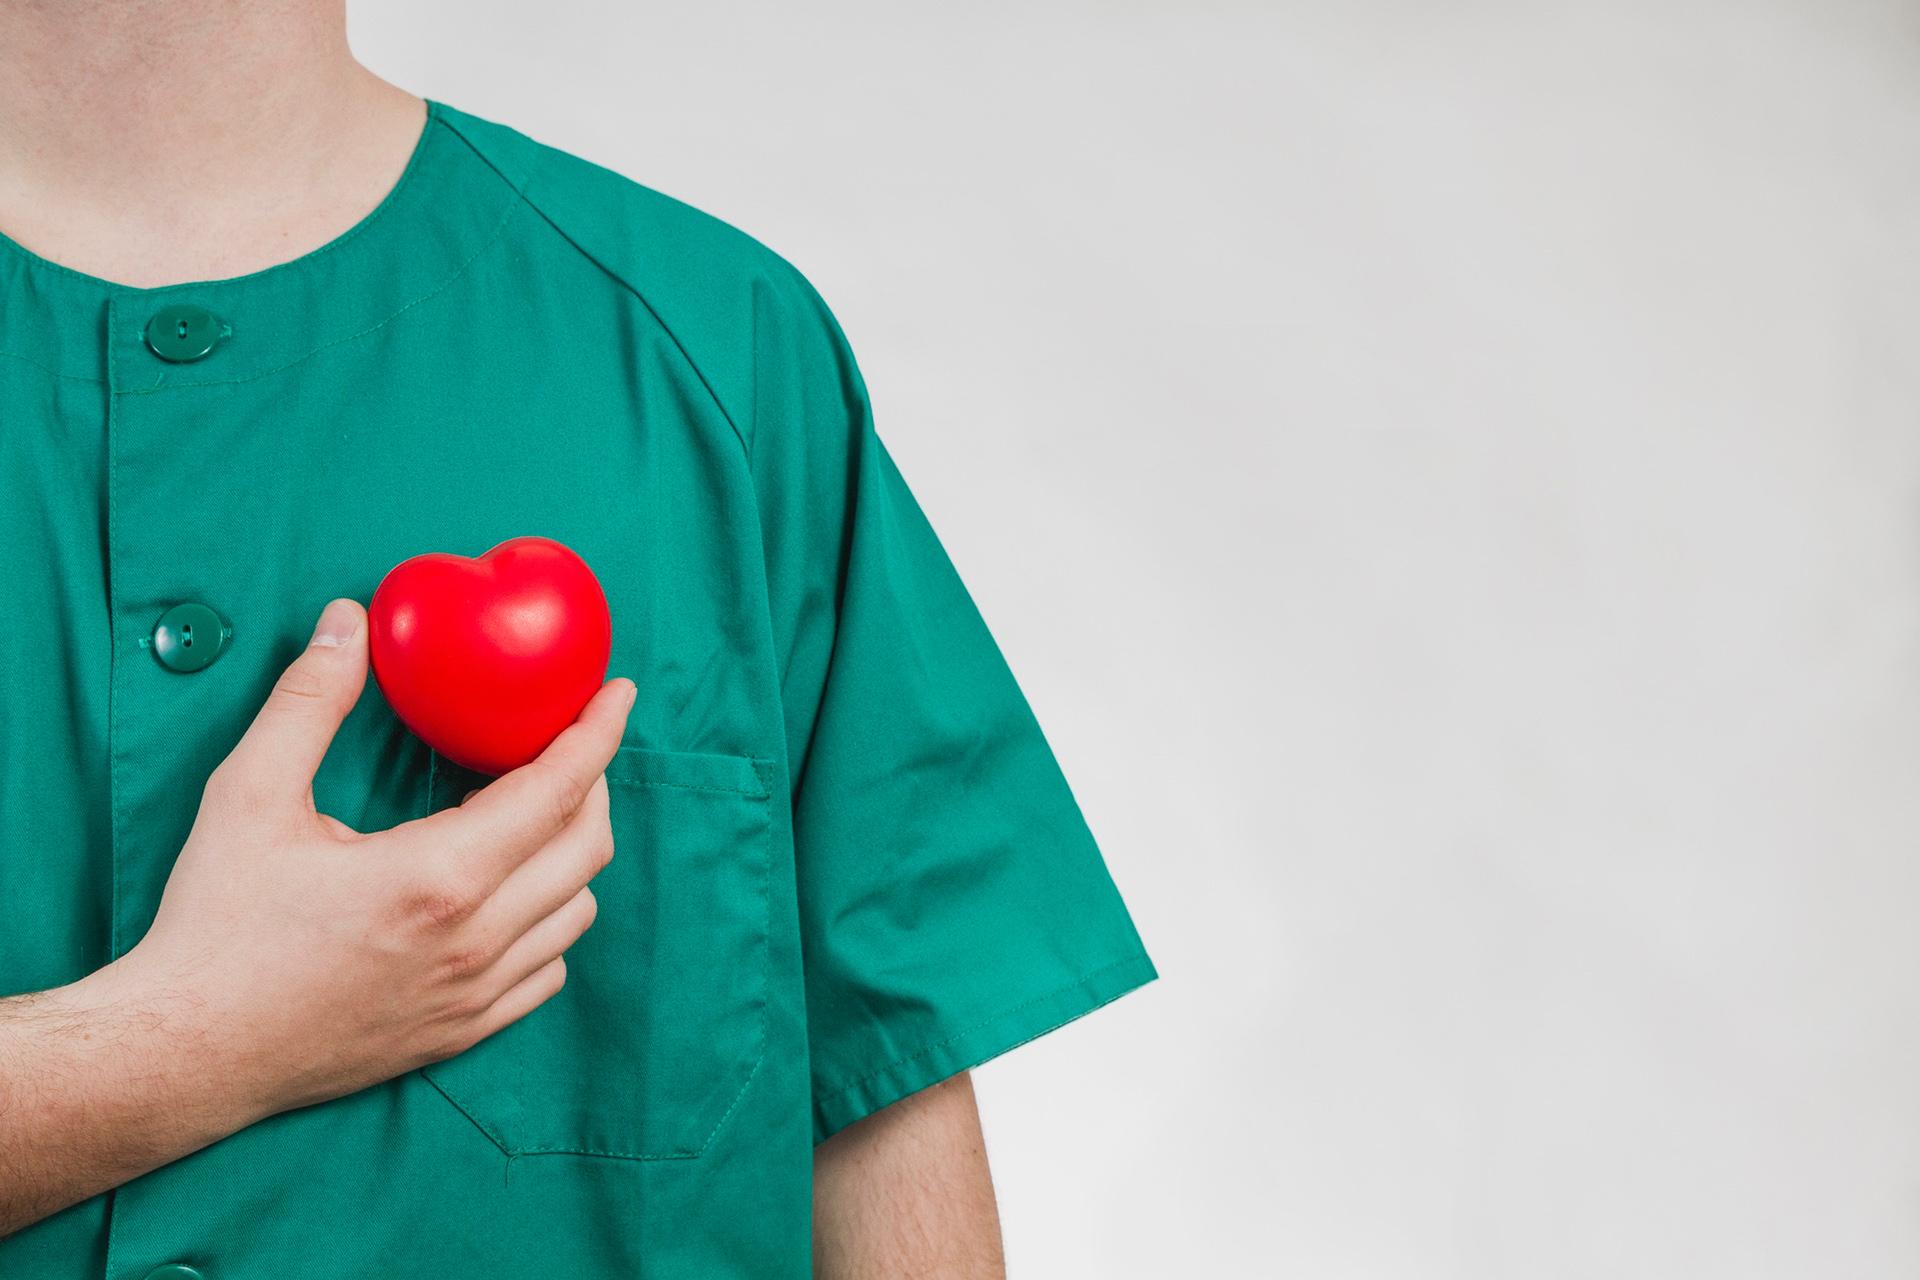 हृदय में वाल्व का प्रतिस्थापन: 4 वाल्व रिप्लेसमेंट सर्जरी